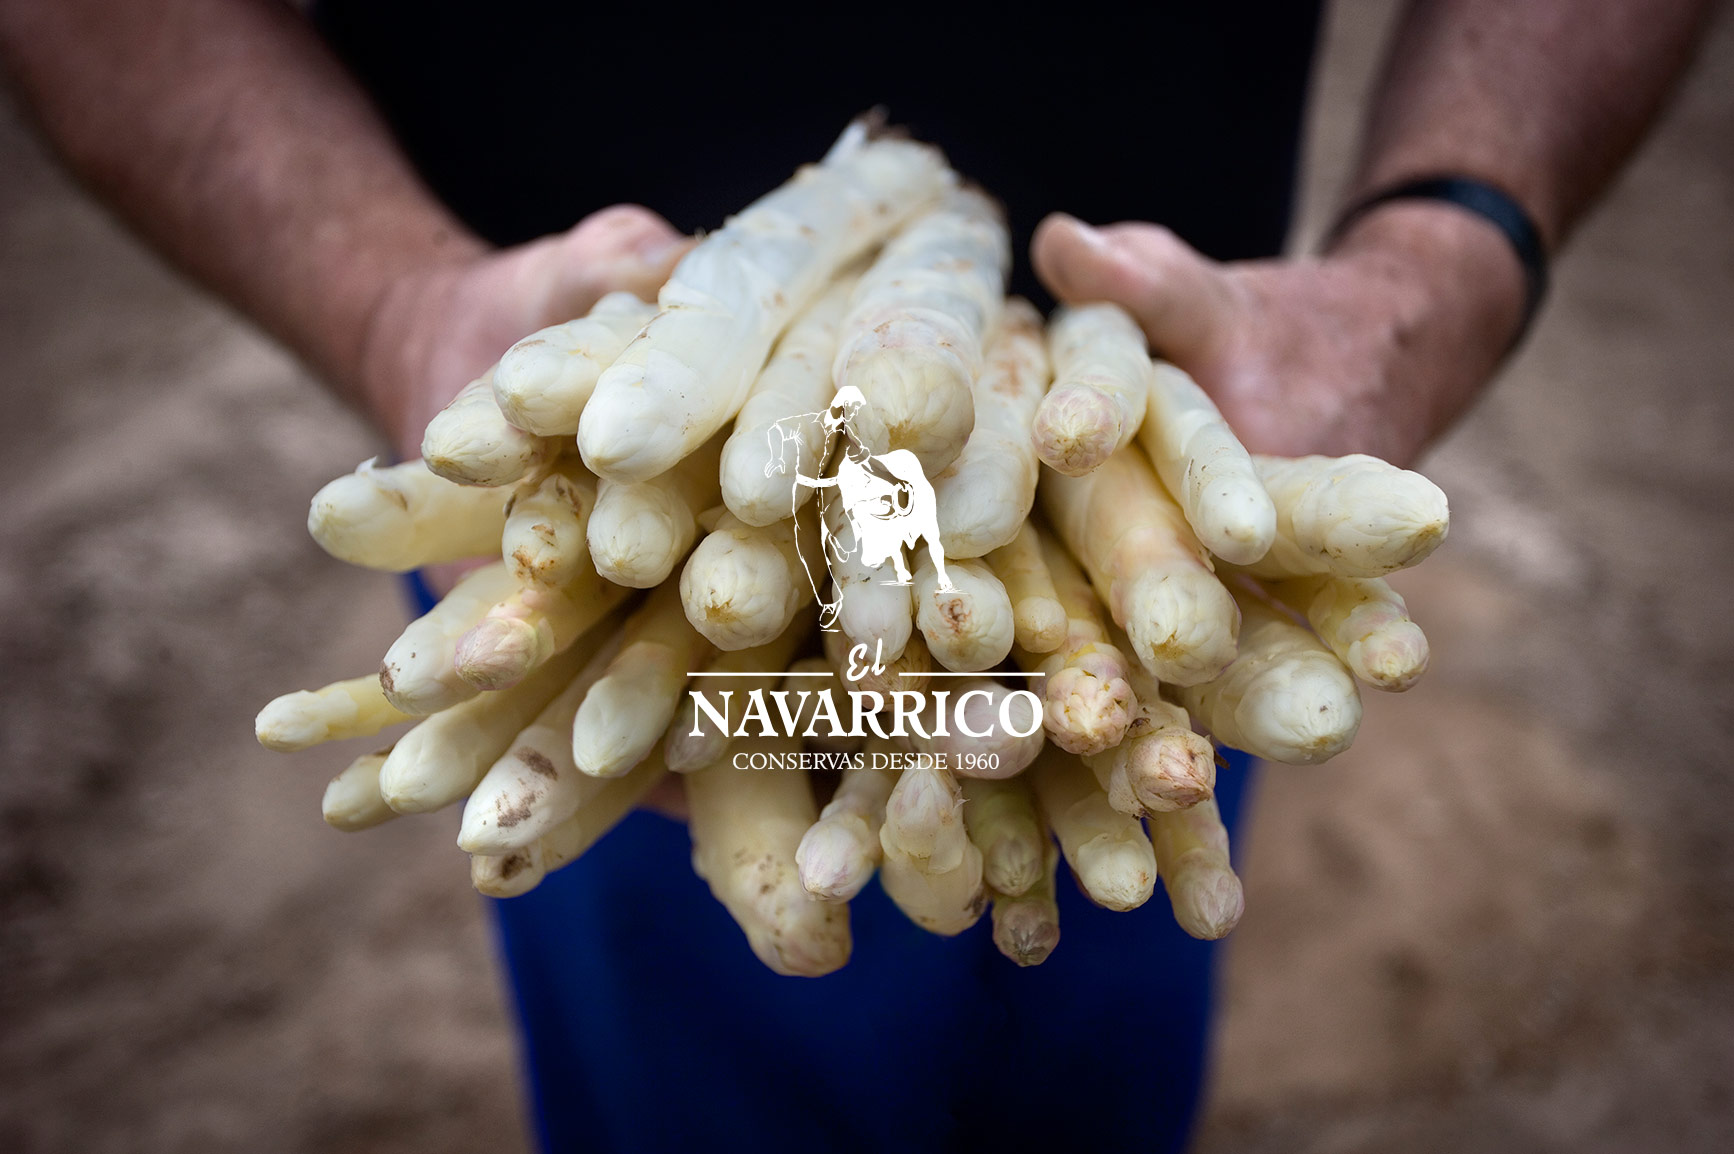 Valge spargel Navarrast - El Navarrico